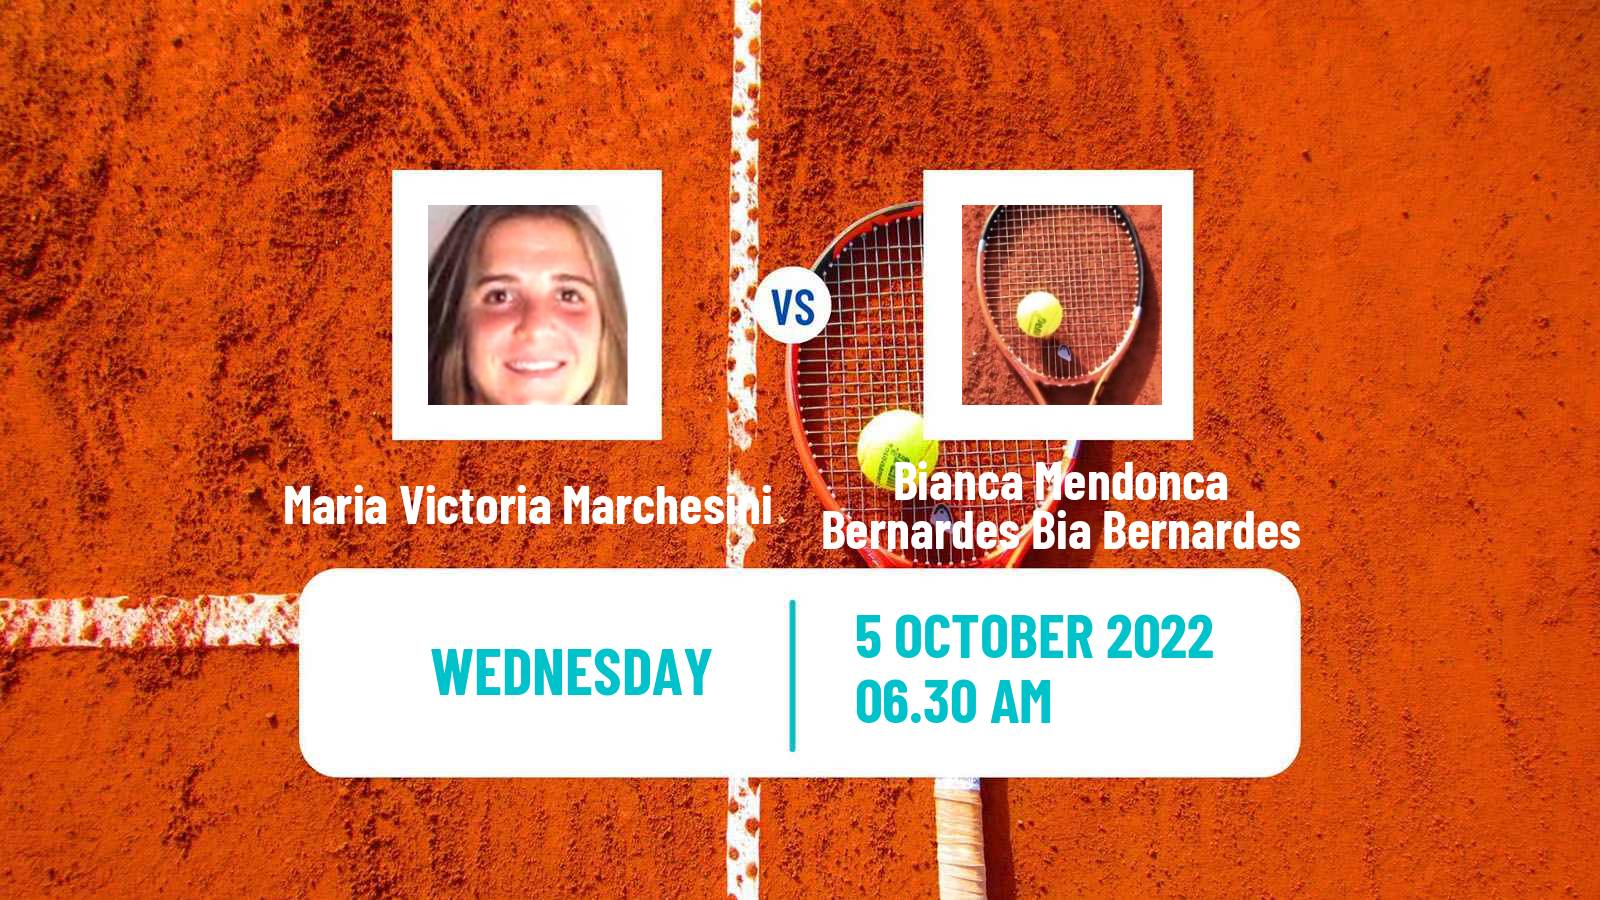 Tennis ITF Tournaments Maria Victoria Marchesini - Bianca Mendonca Bernardes Bia Bernardes